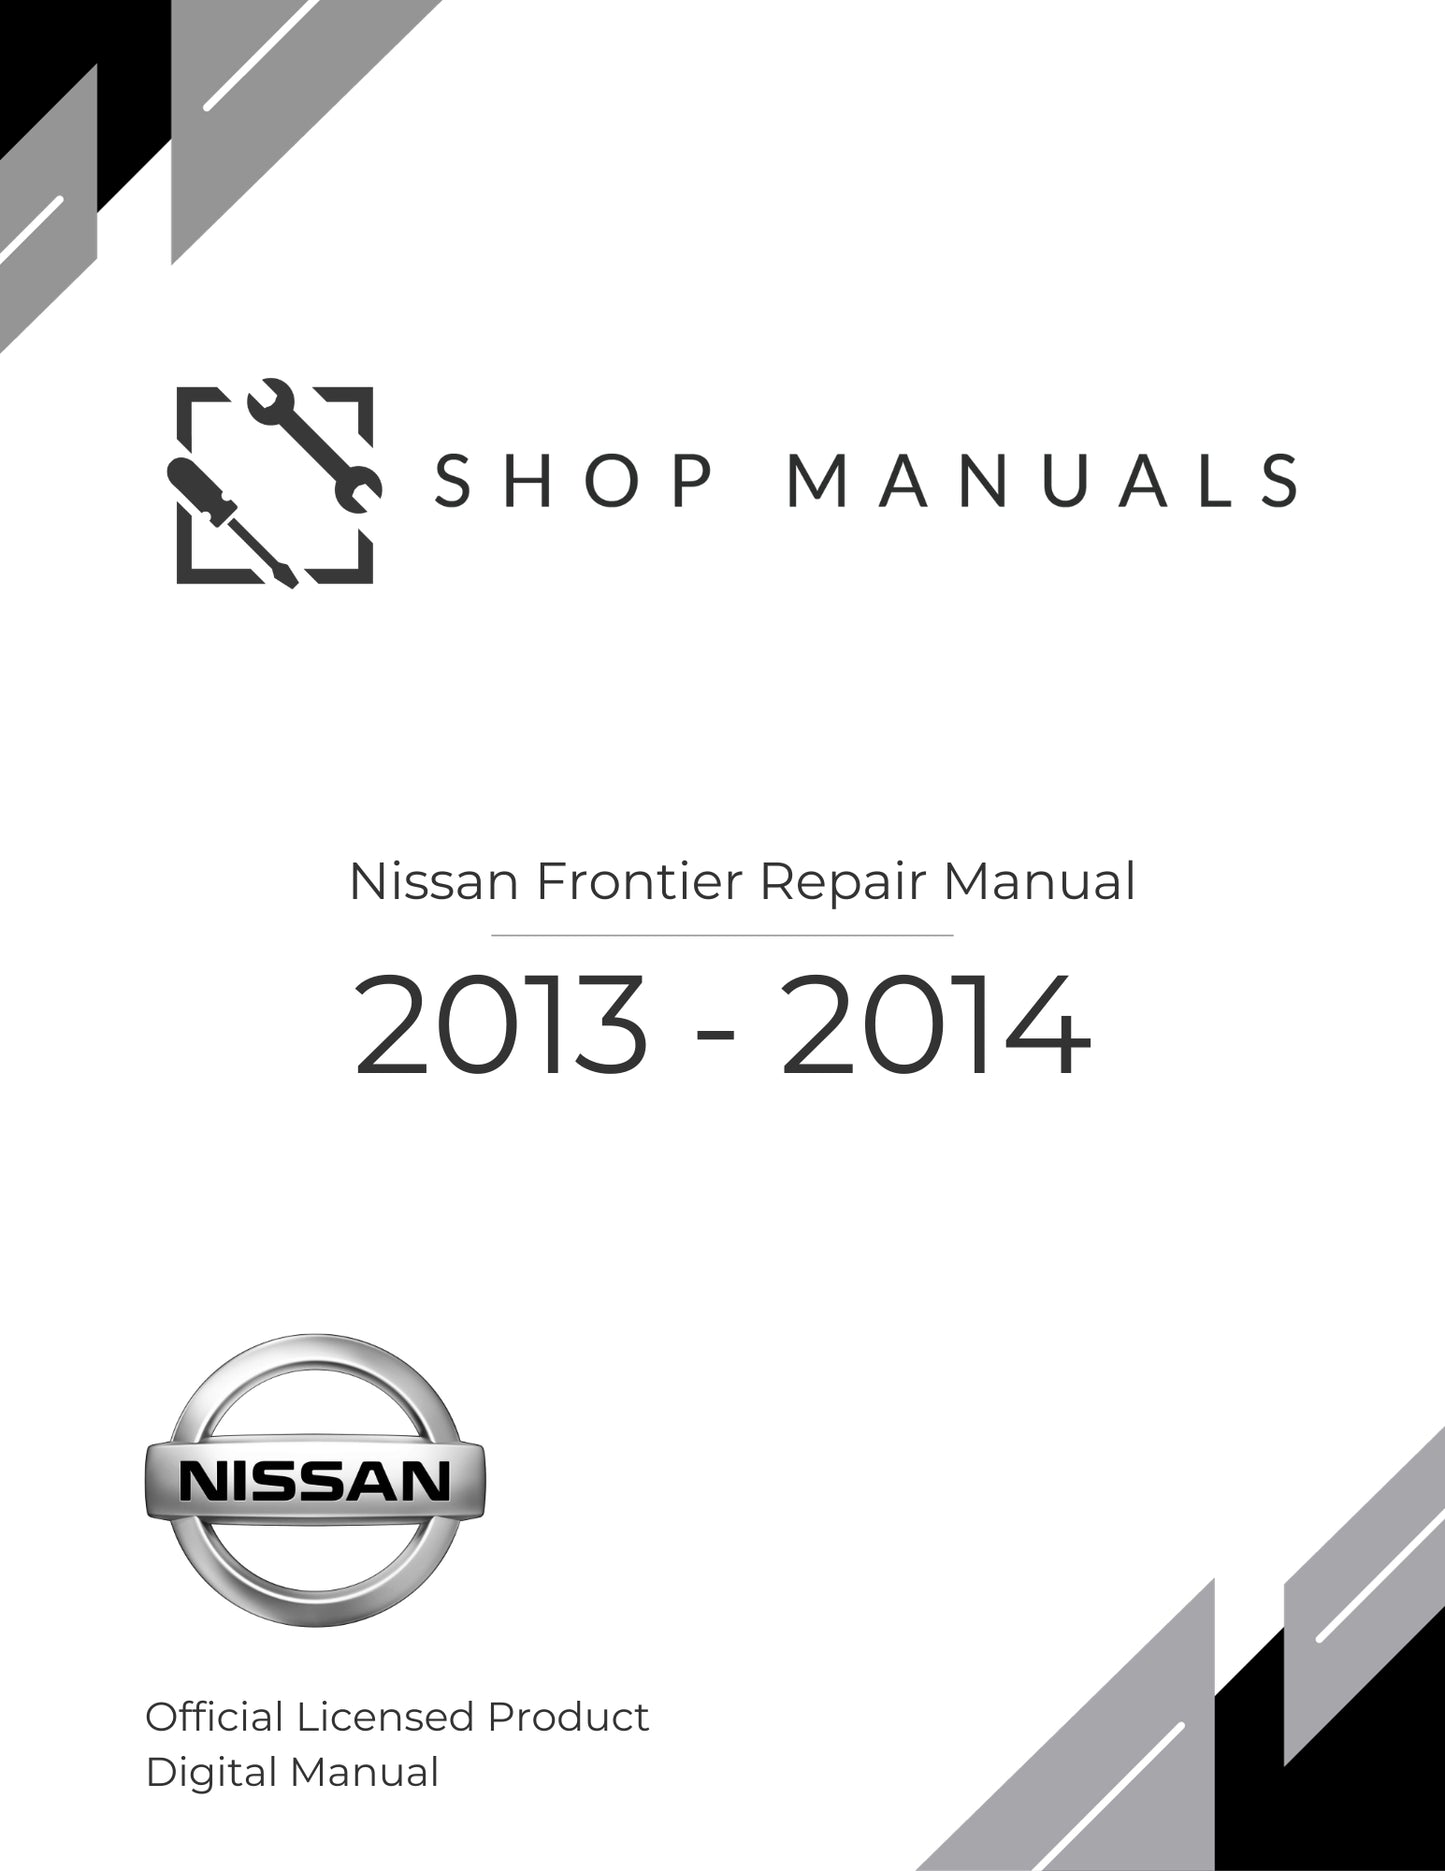 2013 - 2014 Nissan Frontier Repair Manual